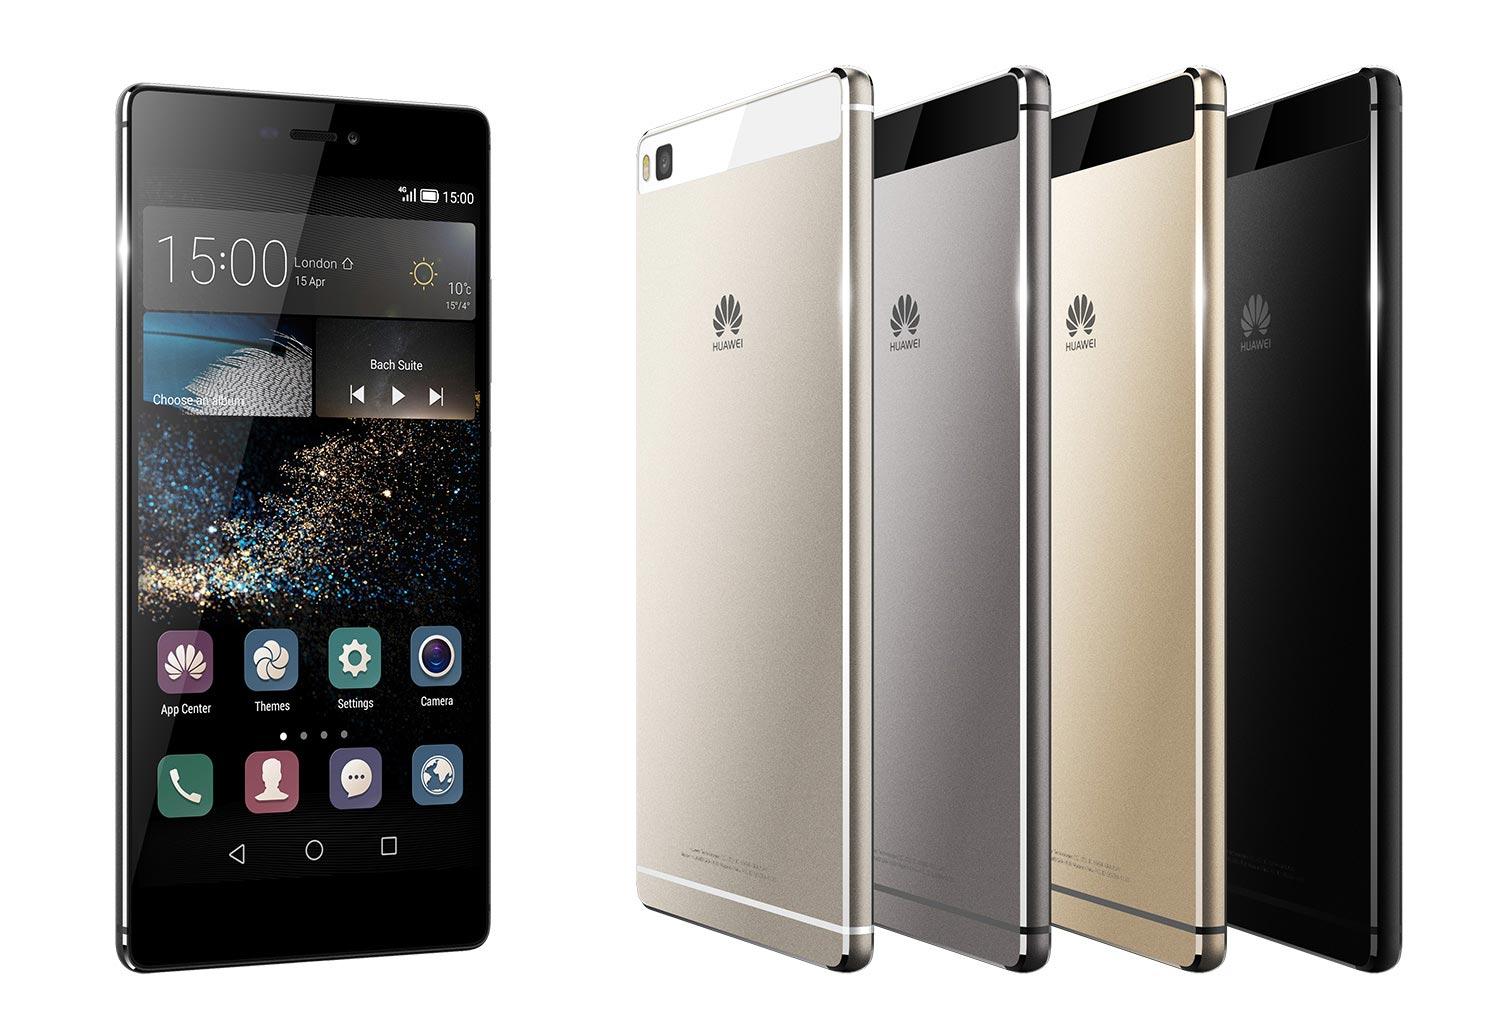 Aparecen nuevas imágenes del Huawei P8